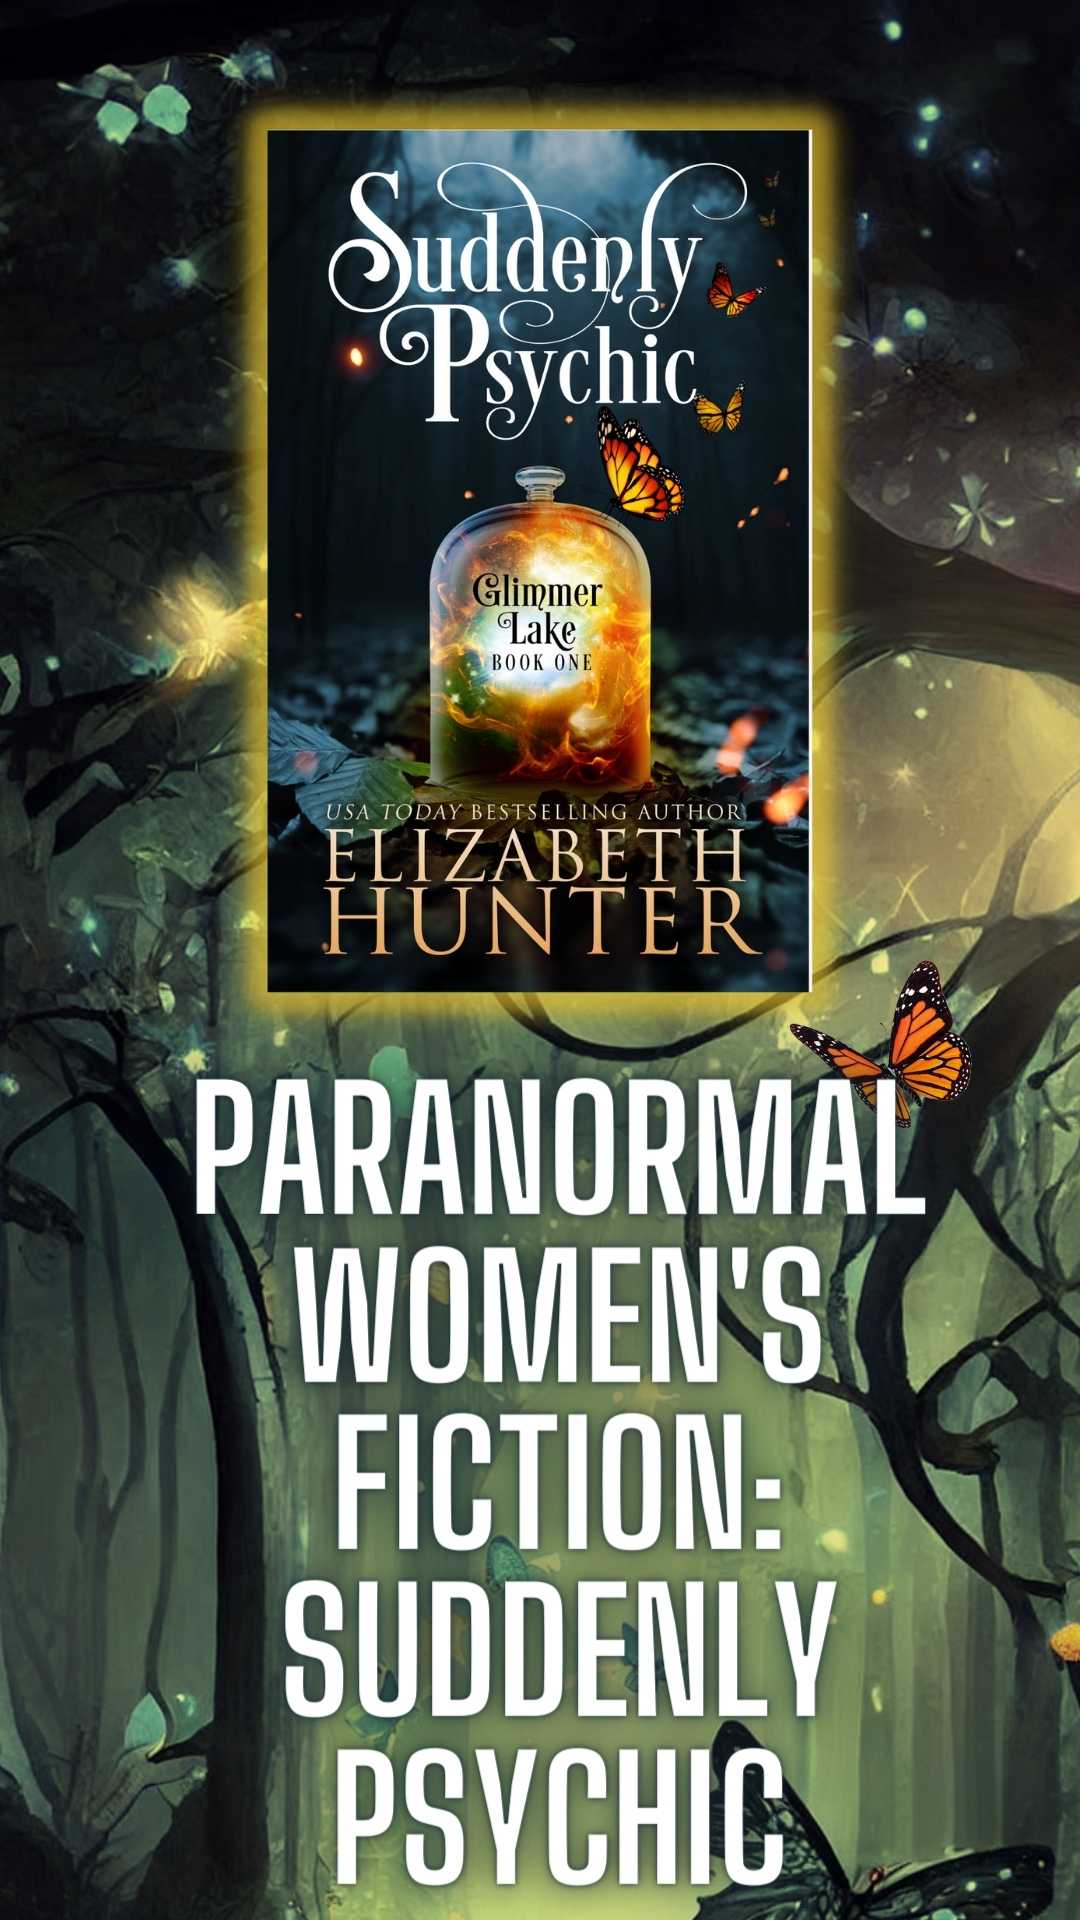 Suddenly Psychic A Paranormal Women's Fiction Novel Story Size